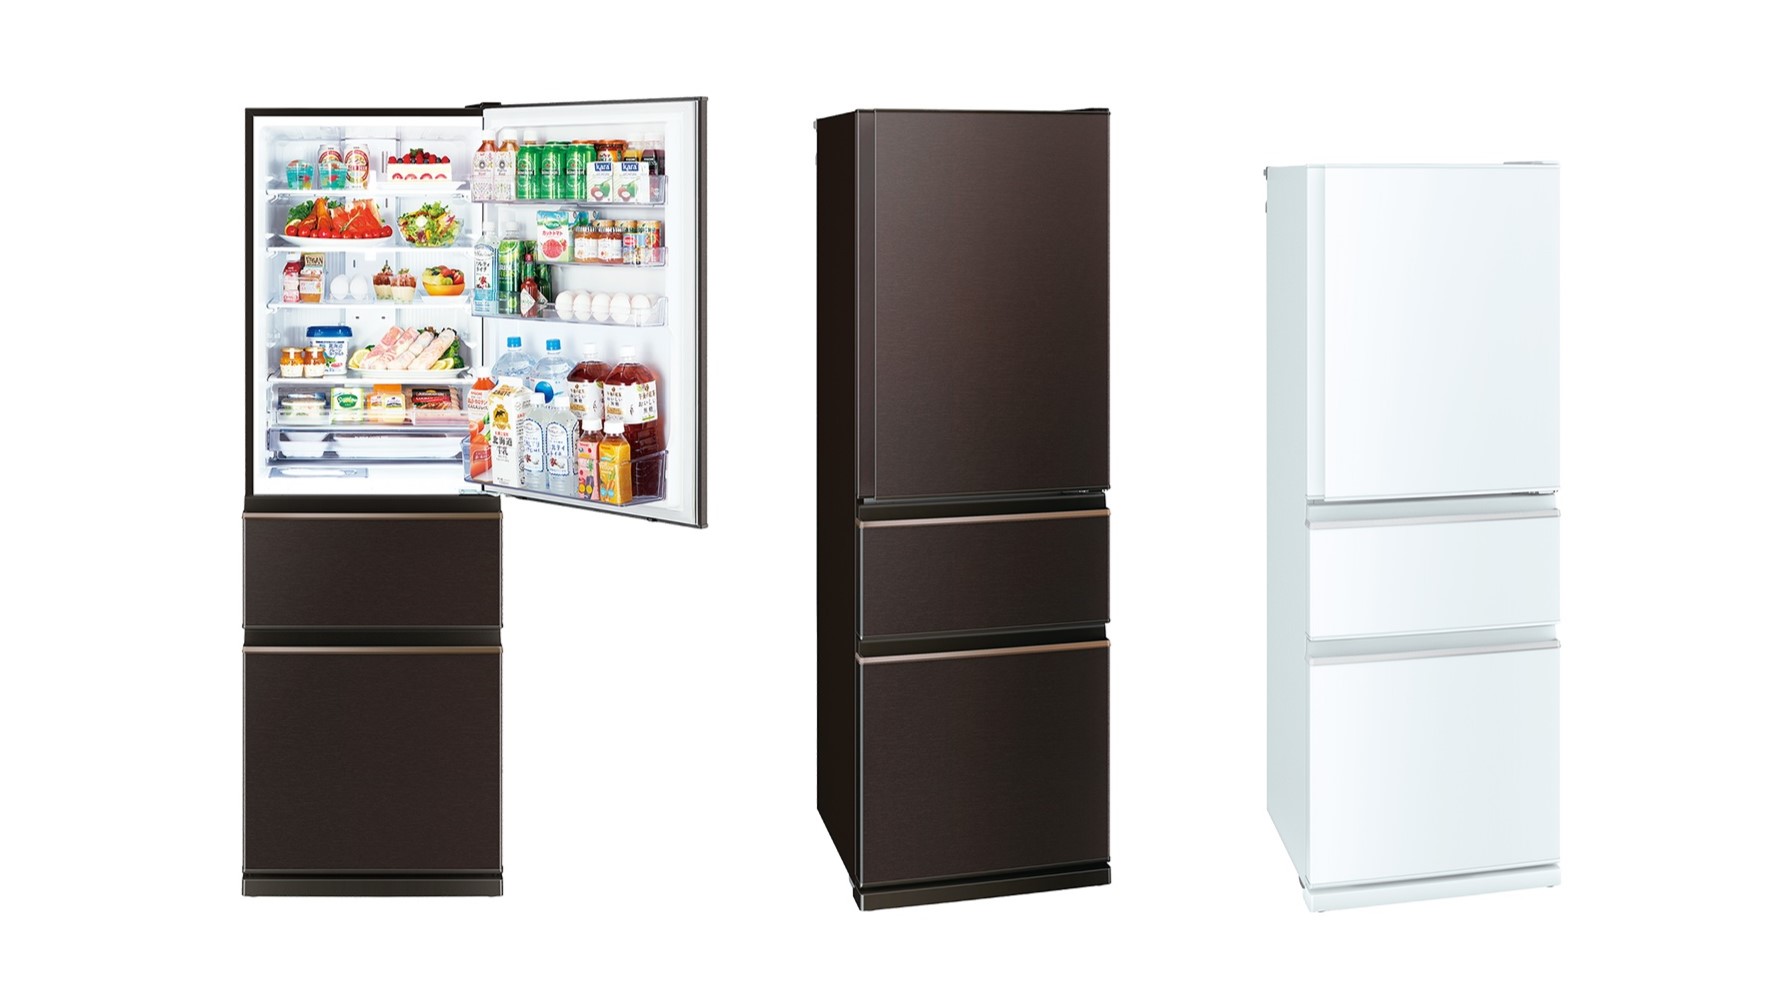 2009年 三菱冷蔵庫 370L 自動製氷機能付き - キッチン家電